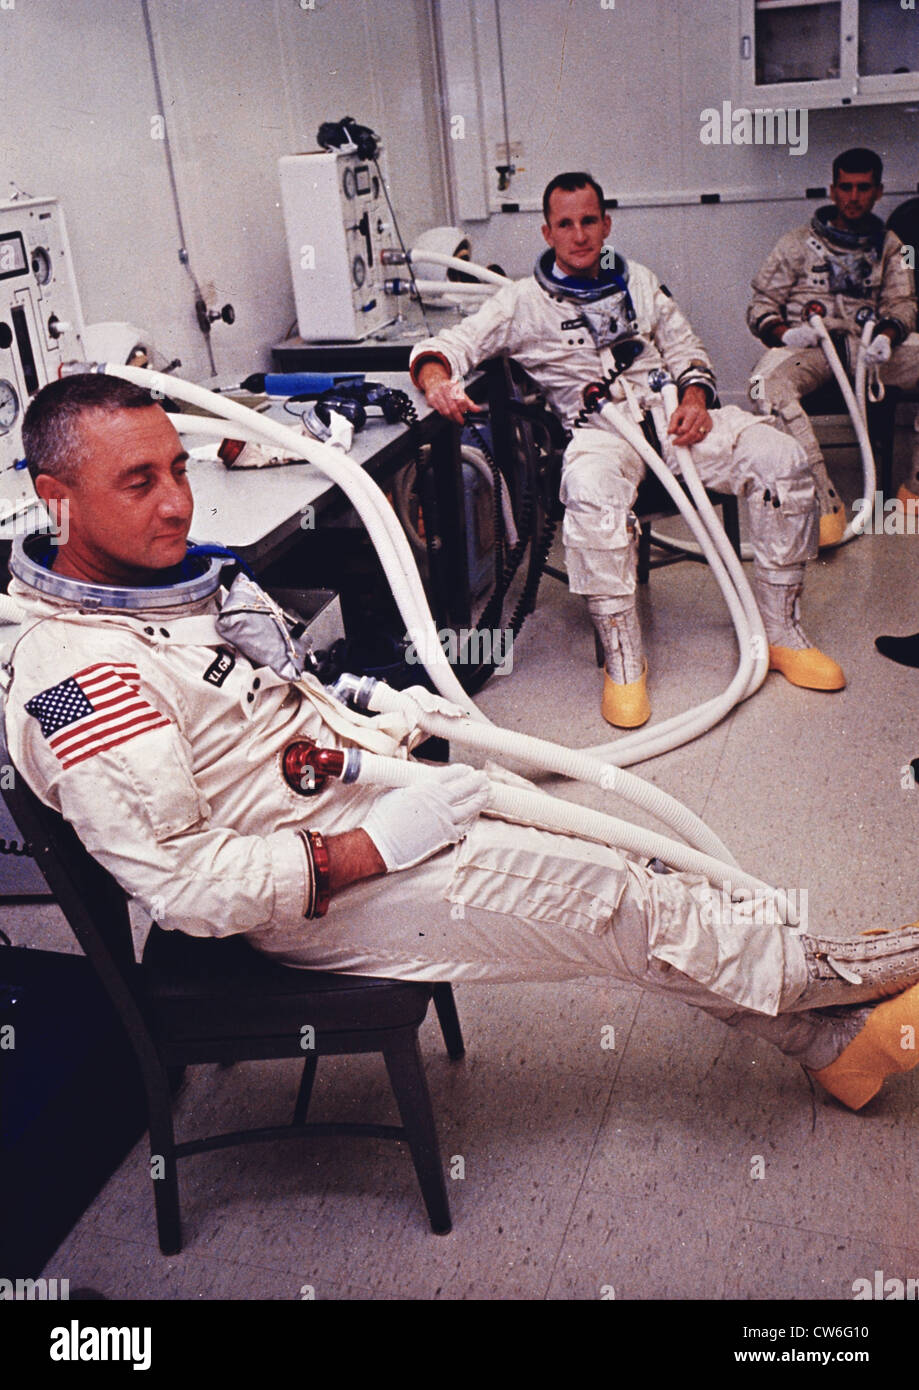 Die Besatzung von Apollo 1. Mitglieder der Besatzung stirbt bei einem tragischen Unfall am 27. Januar 1967 Stockfoto